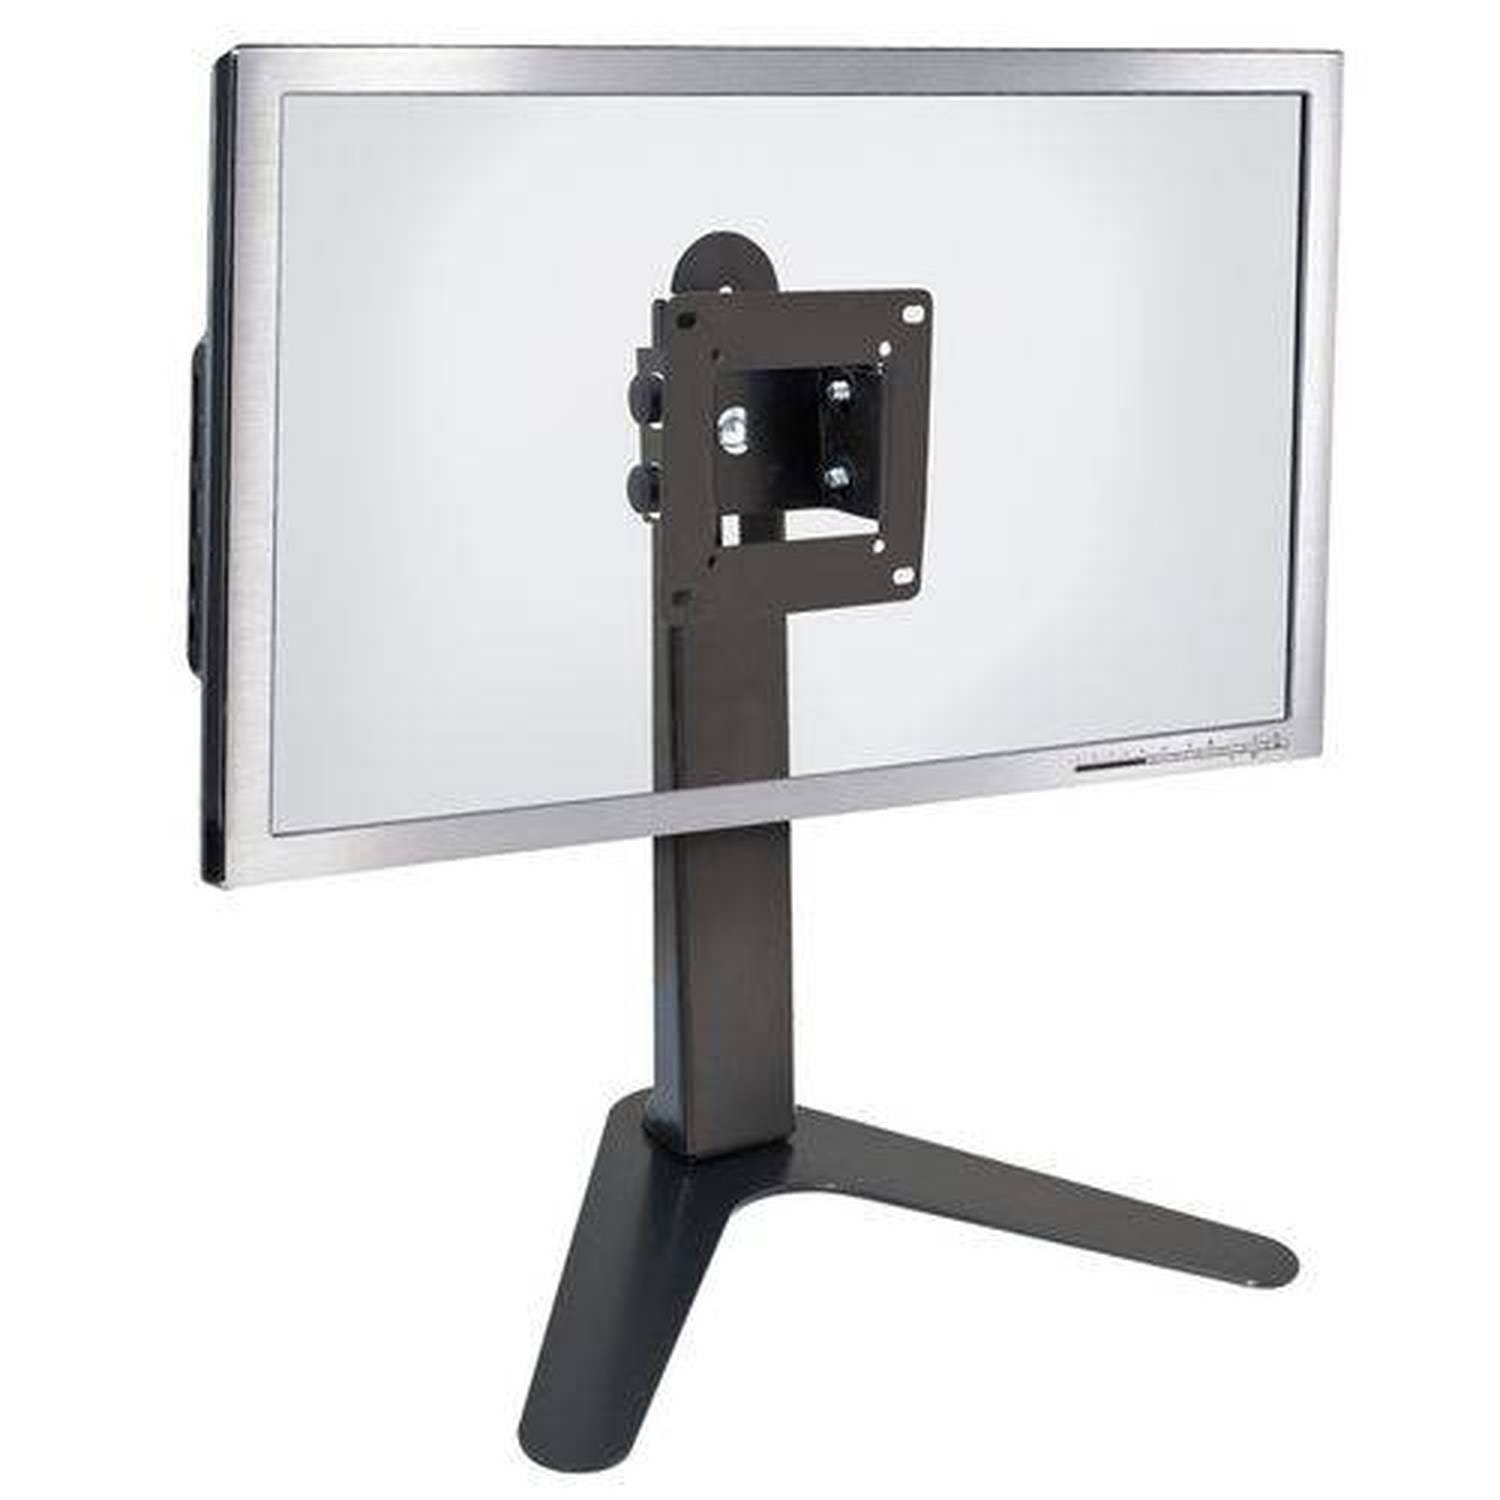 Suporte de Mesa/Pedestal Ergonômico Nr17 para Monitor Led/LCD/3D de 10" A 24" com Inclinação Mt-Slim -